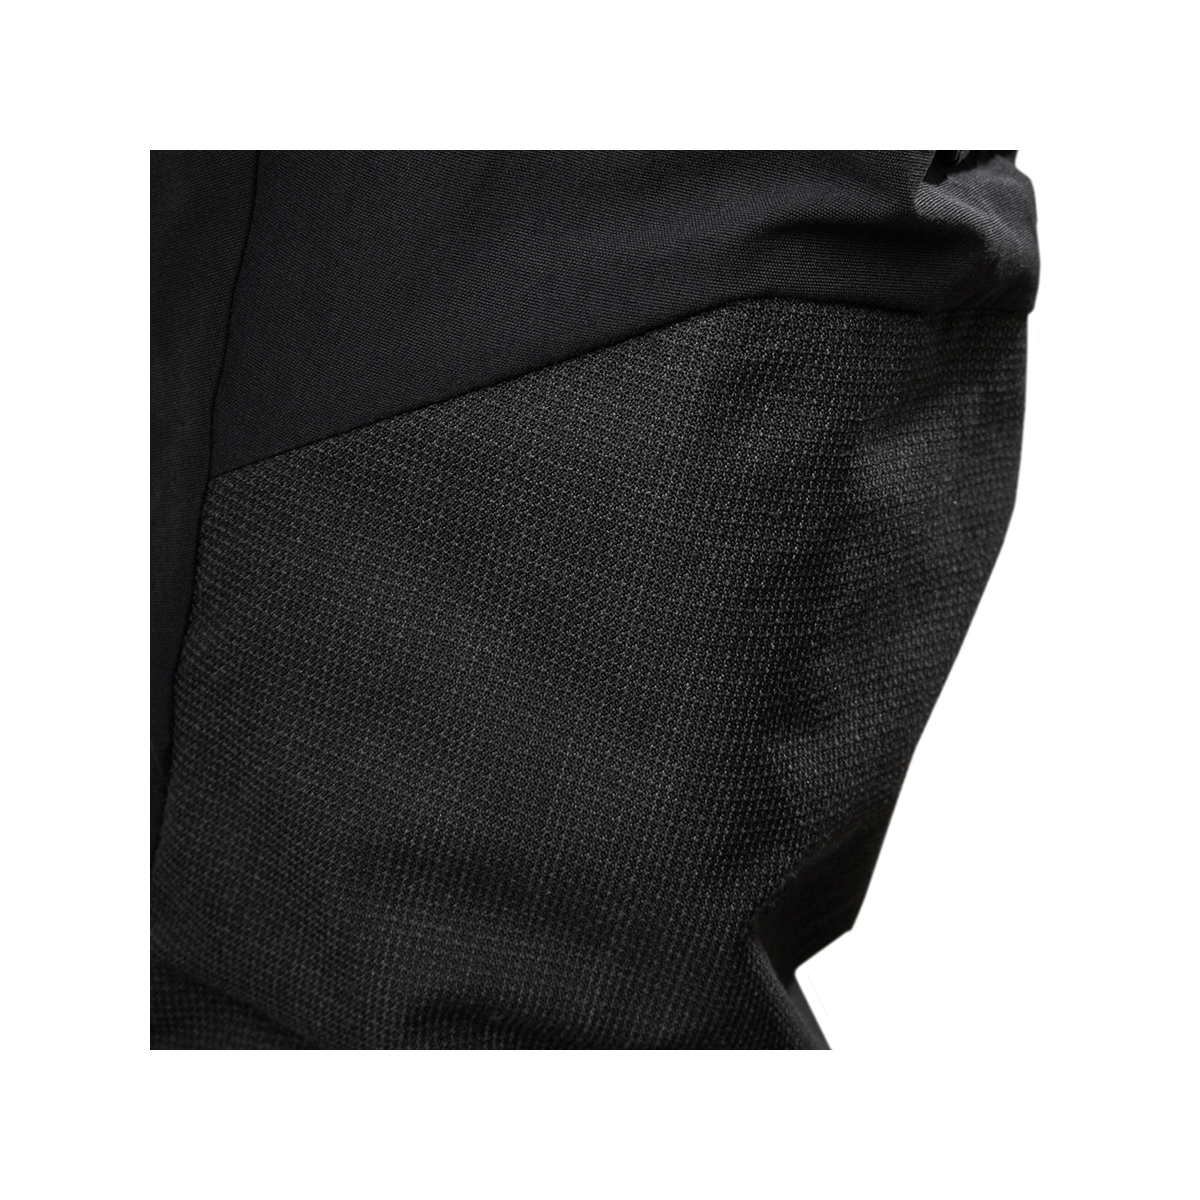 Musto Evolution Performance pantalon de voile 2.0 homme noir, taille 34